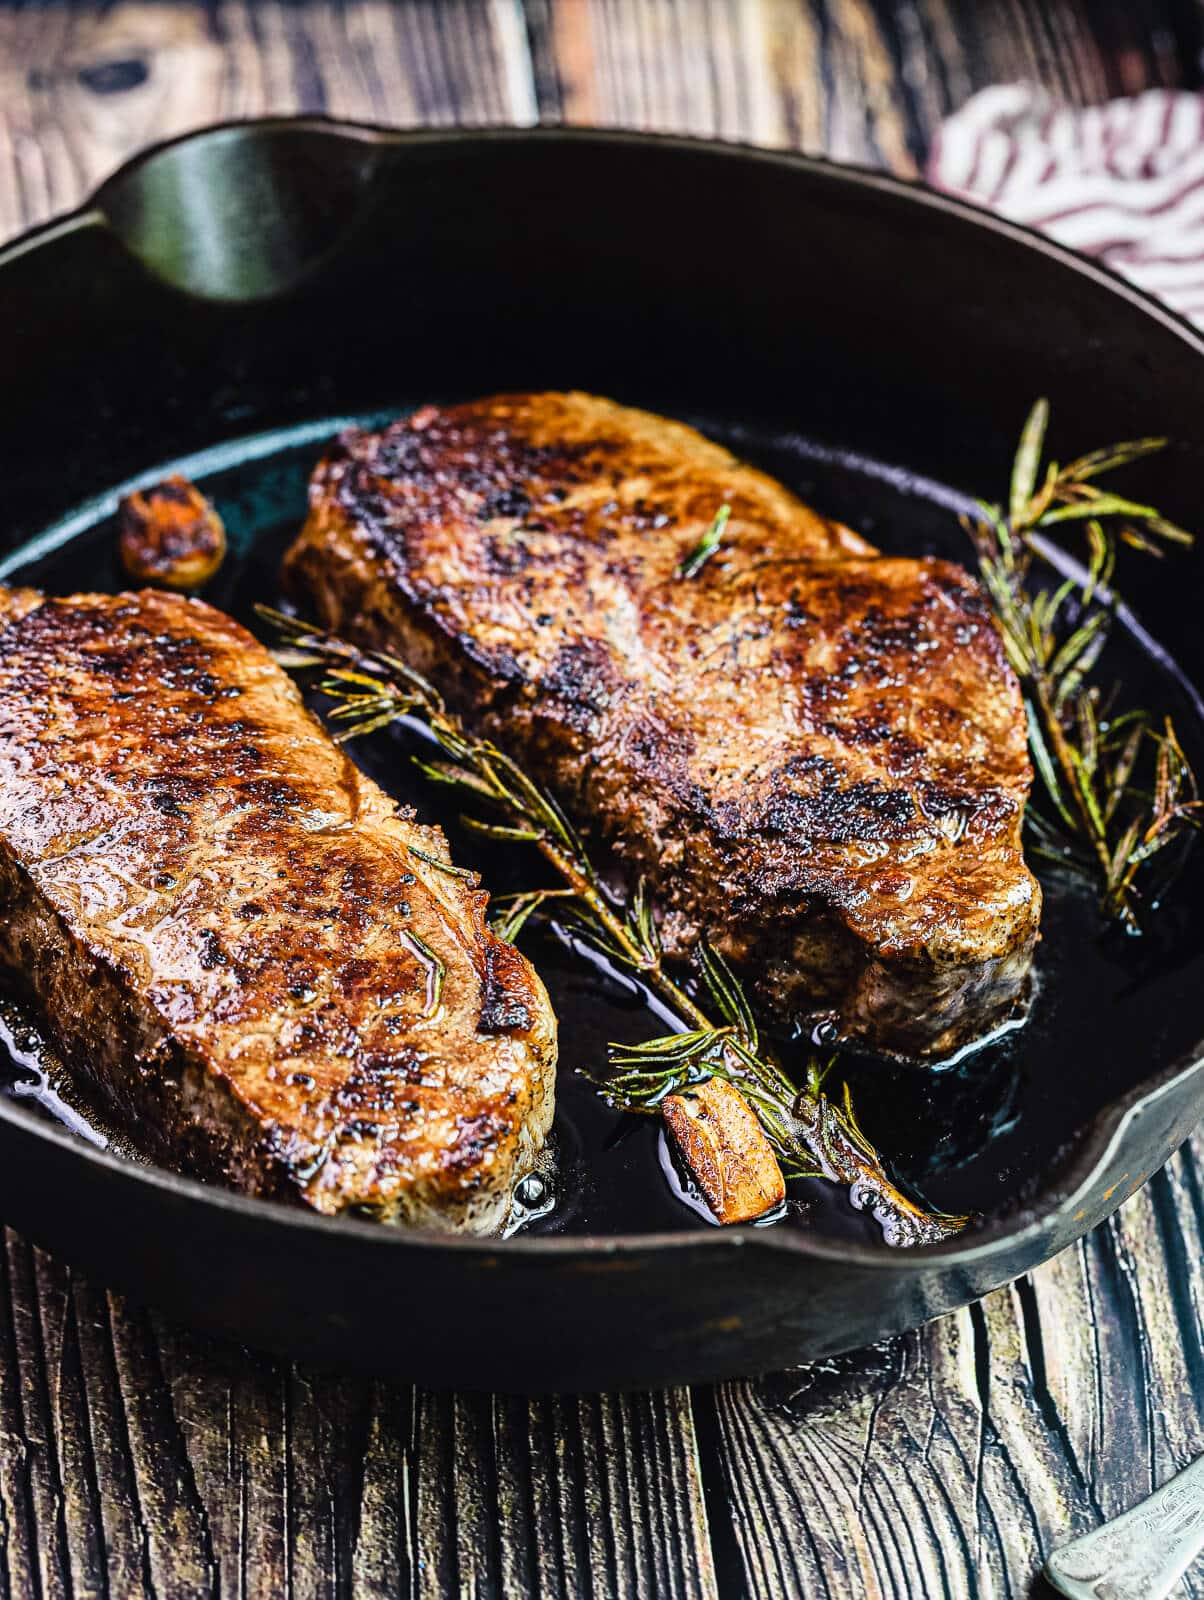 https://www.grillseeker.com/wp-content/uploads/2019/09/pan-seared-steaks-in-cast-iron-pan.jpg